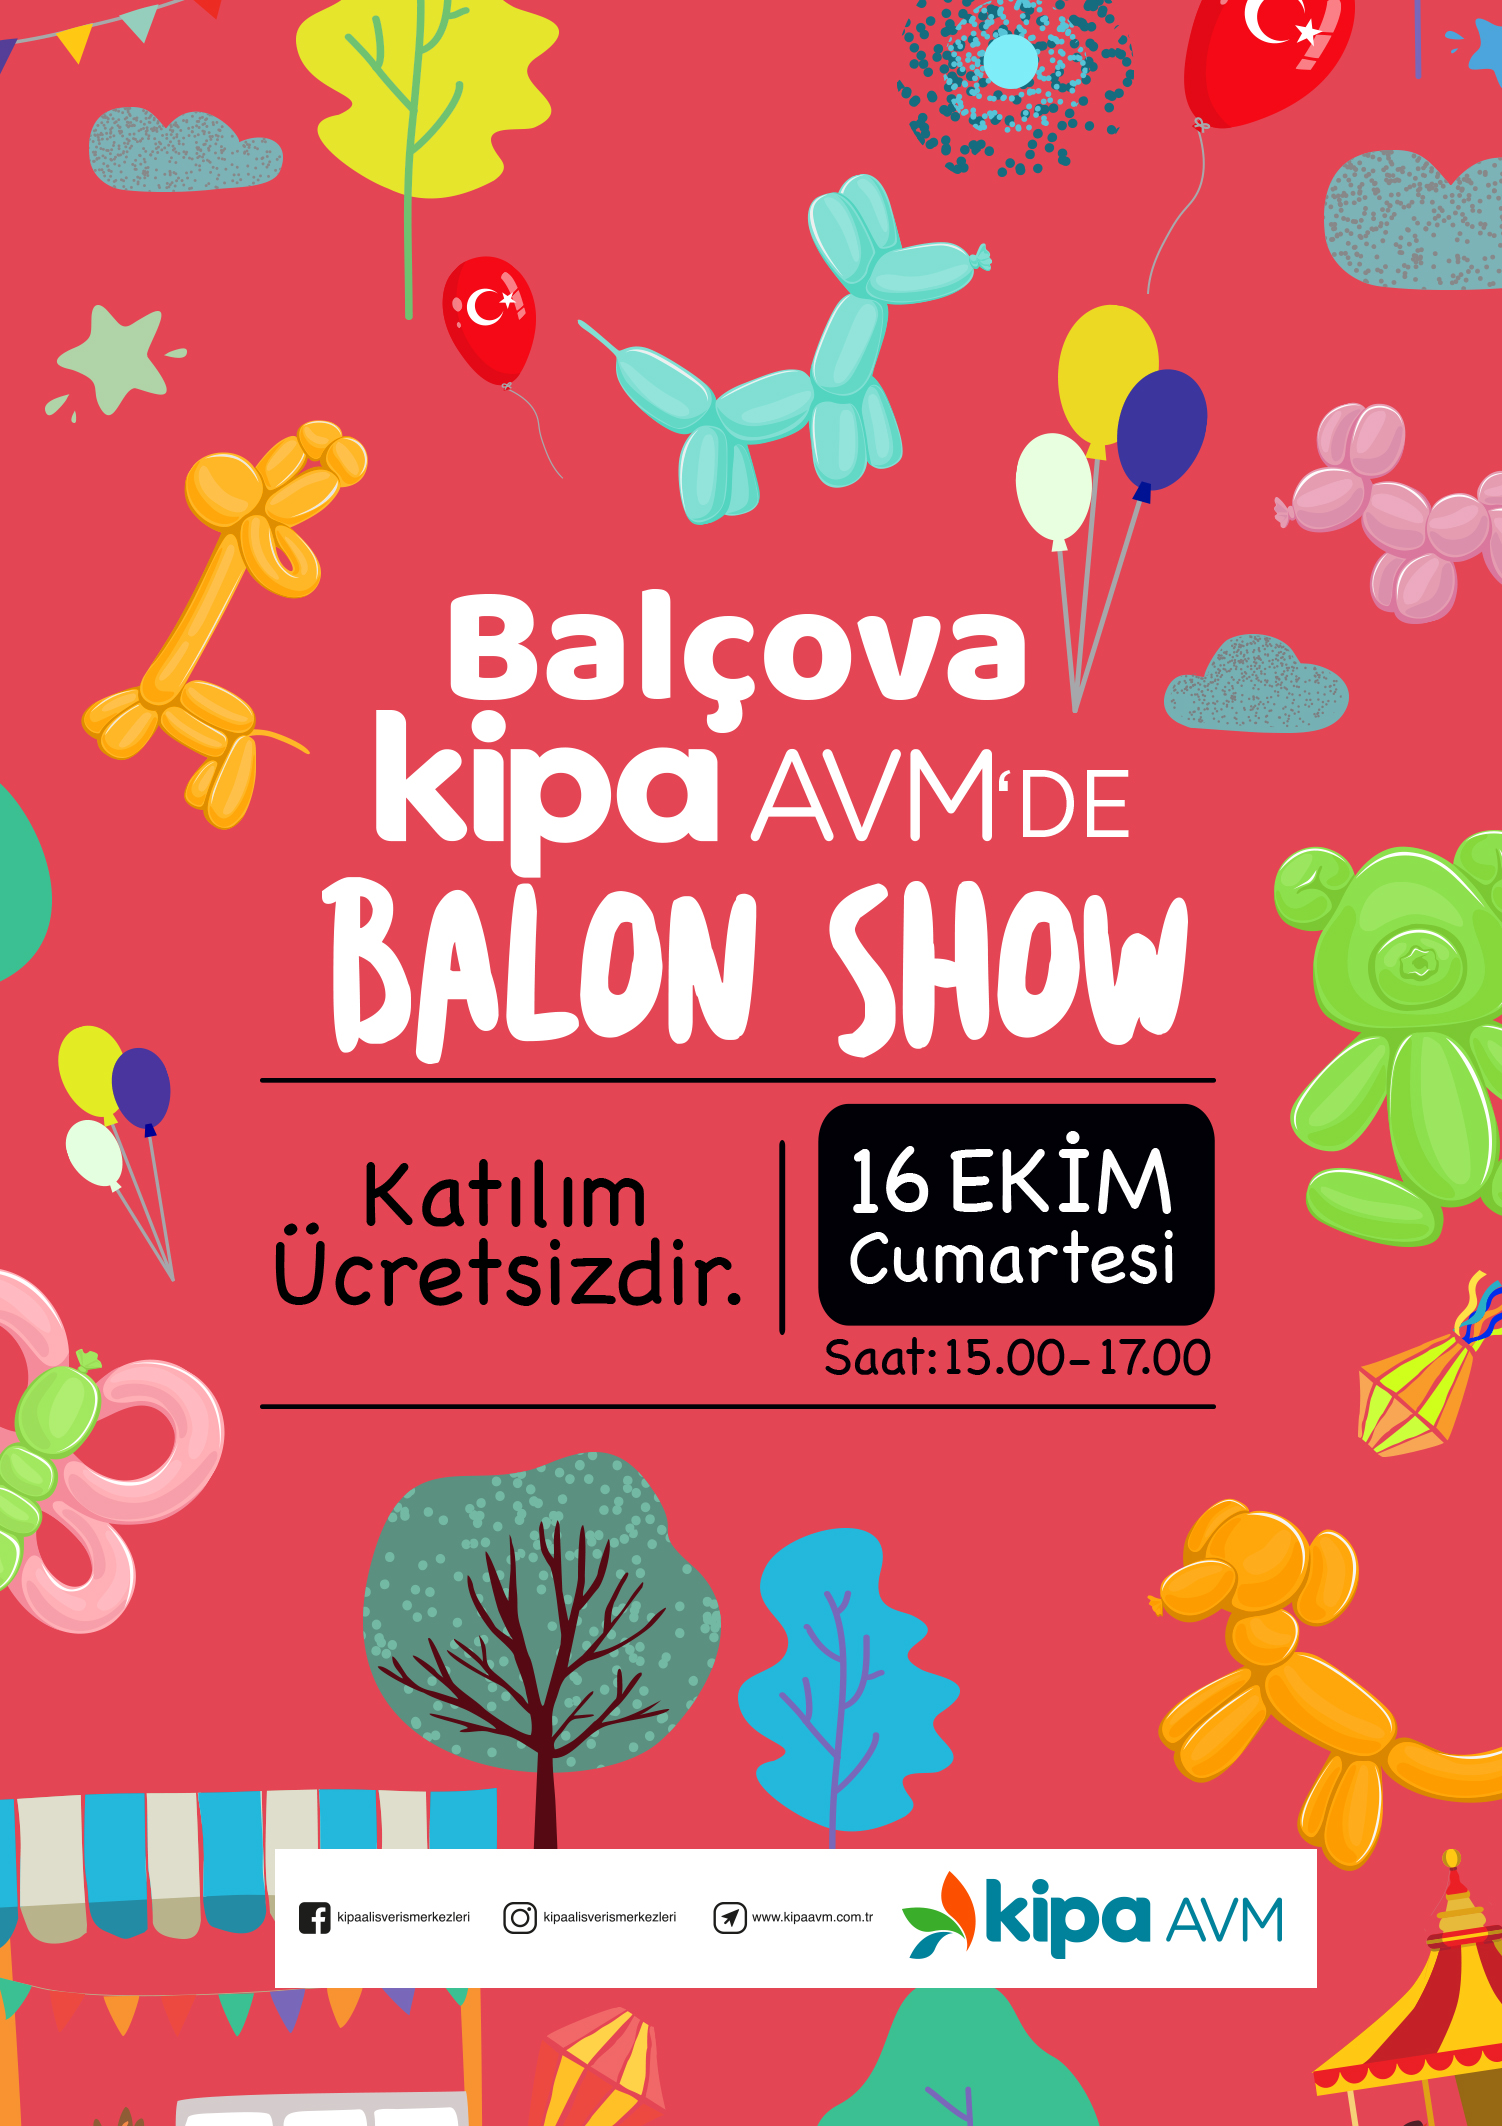 Balçova Kipa AVM'de Balon Show!
